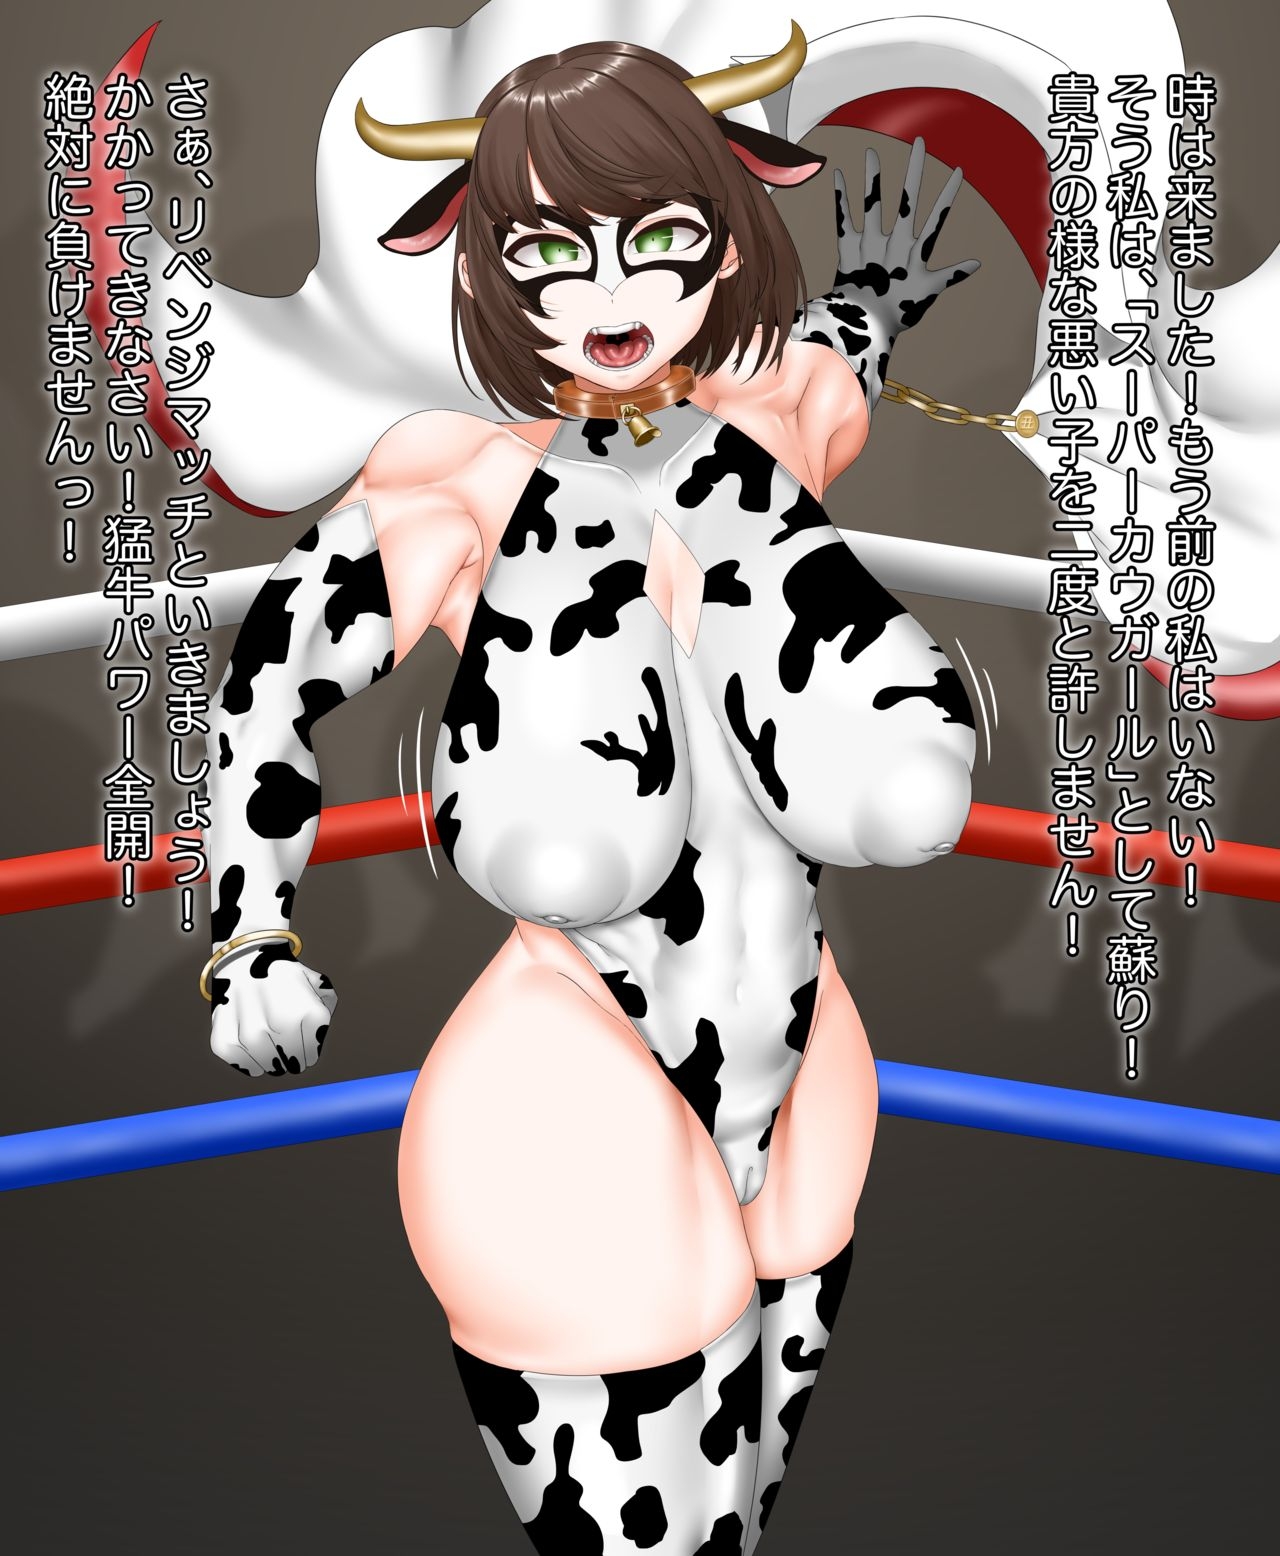 [Pasuhaii] Cow Wreastler & Revenge Match 5